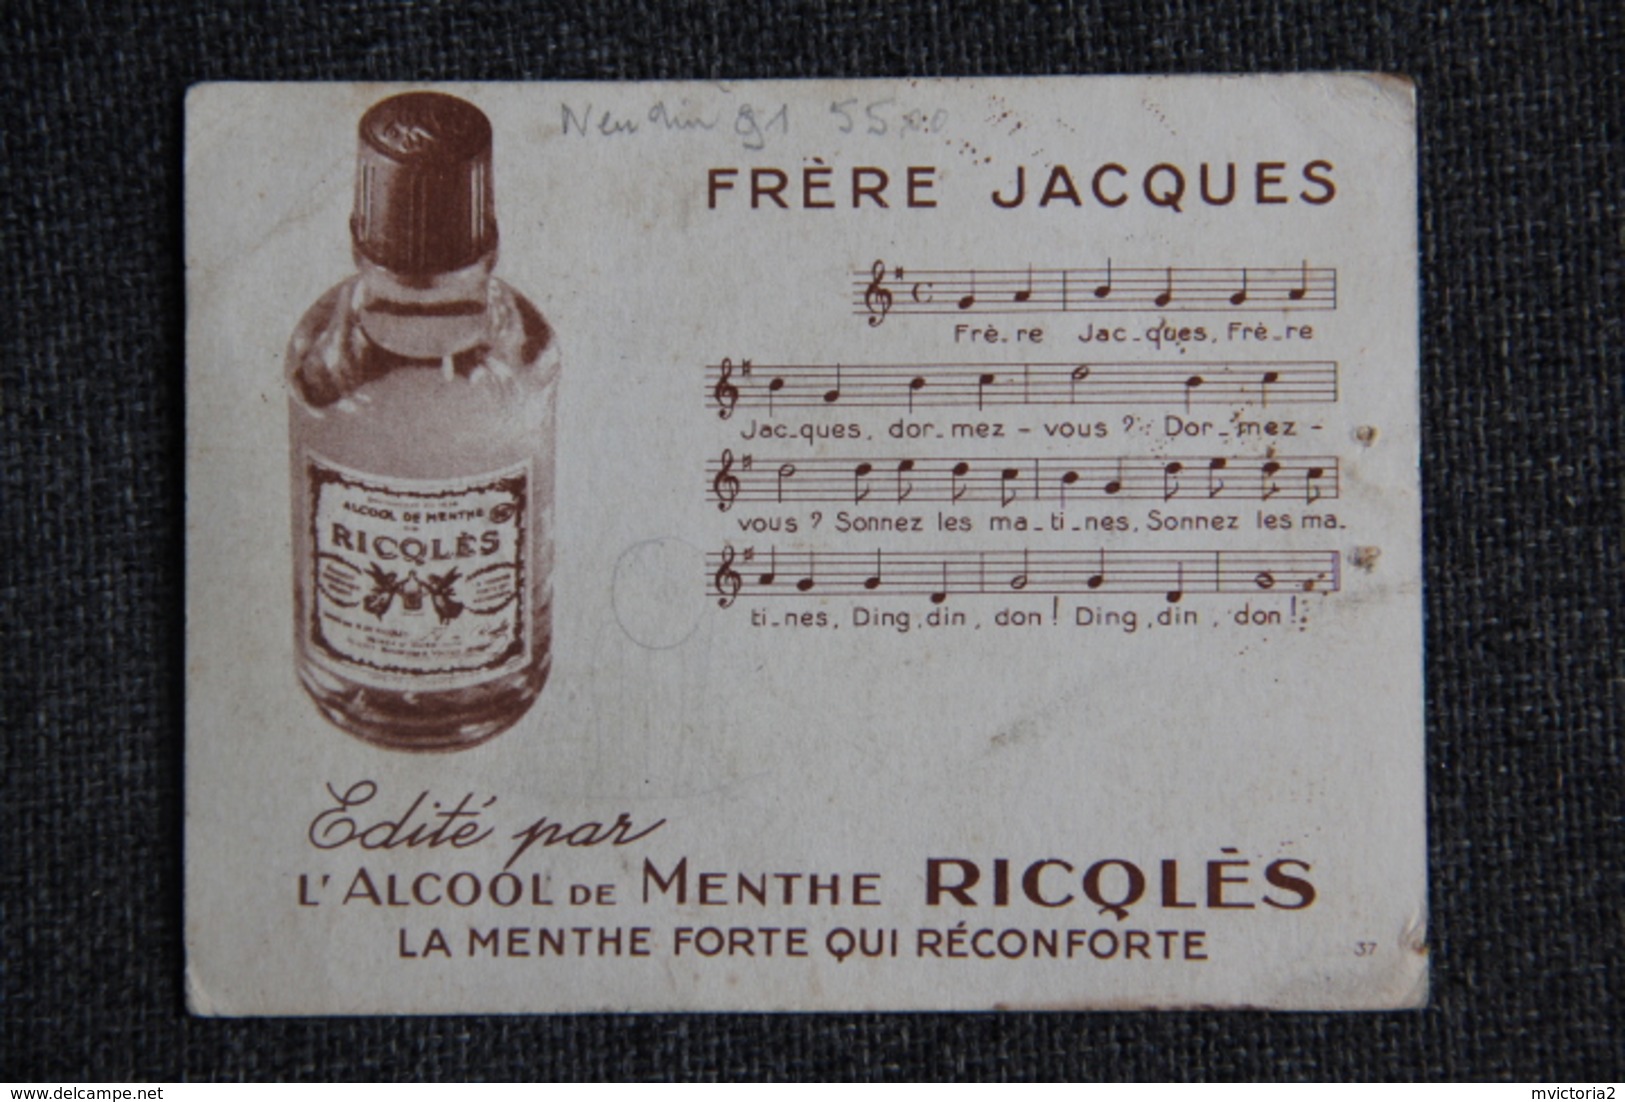 Advertising - Fiche Publicitaire, Alcool de Menthe RICQLES, Chanson  Frère  JACQUES.